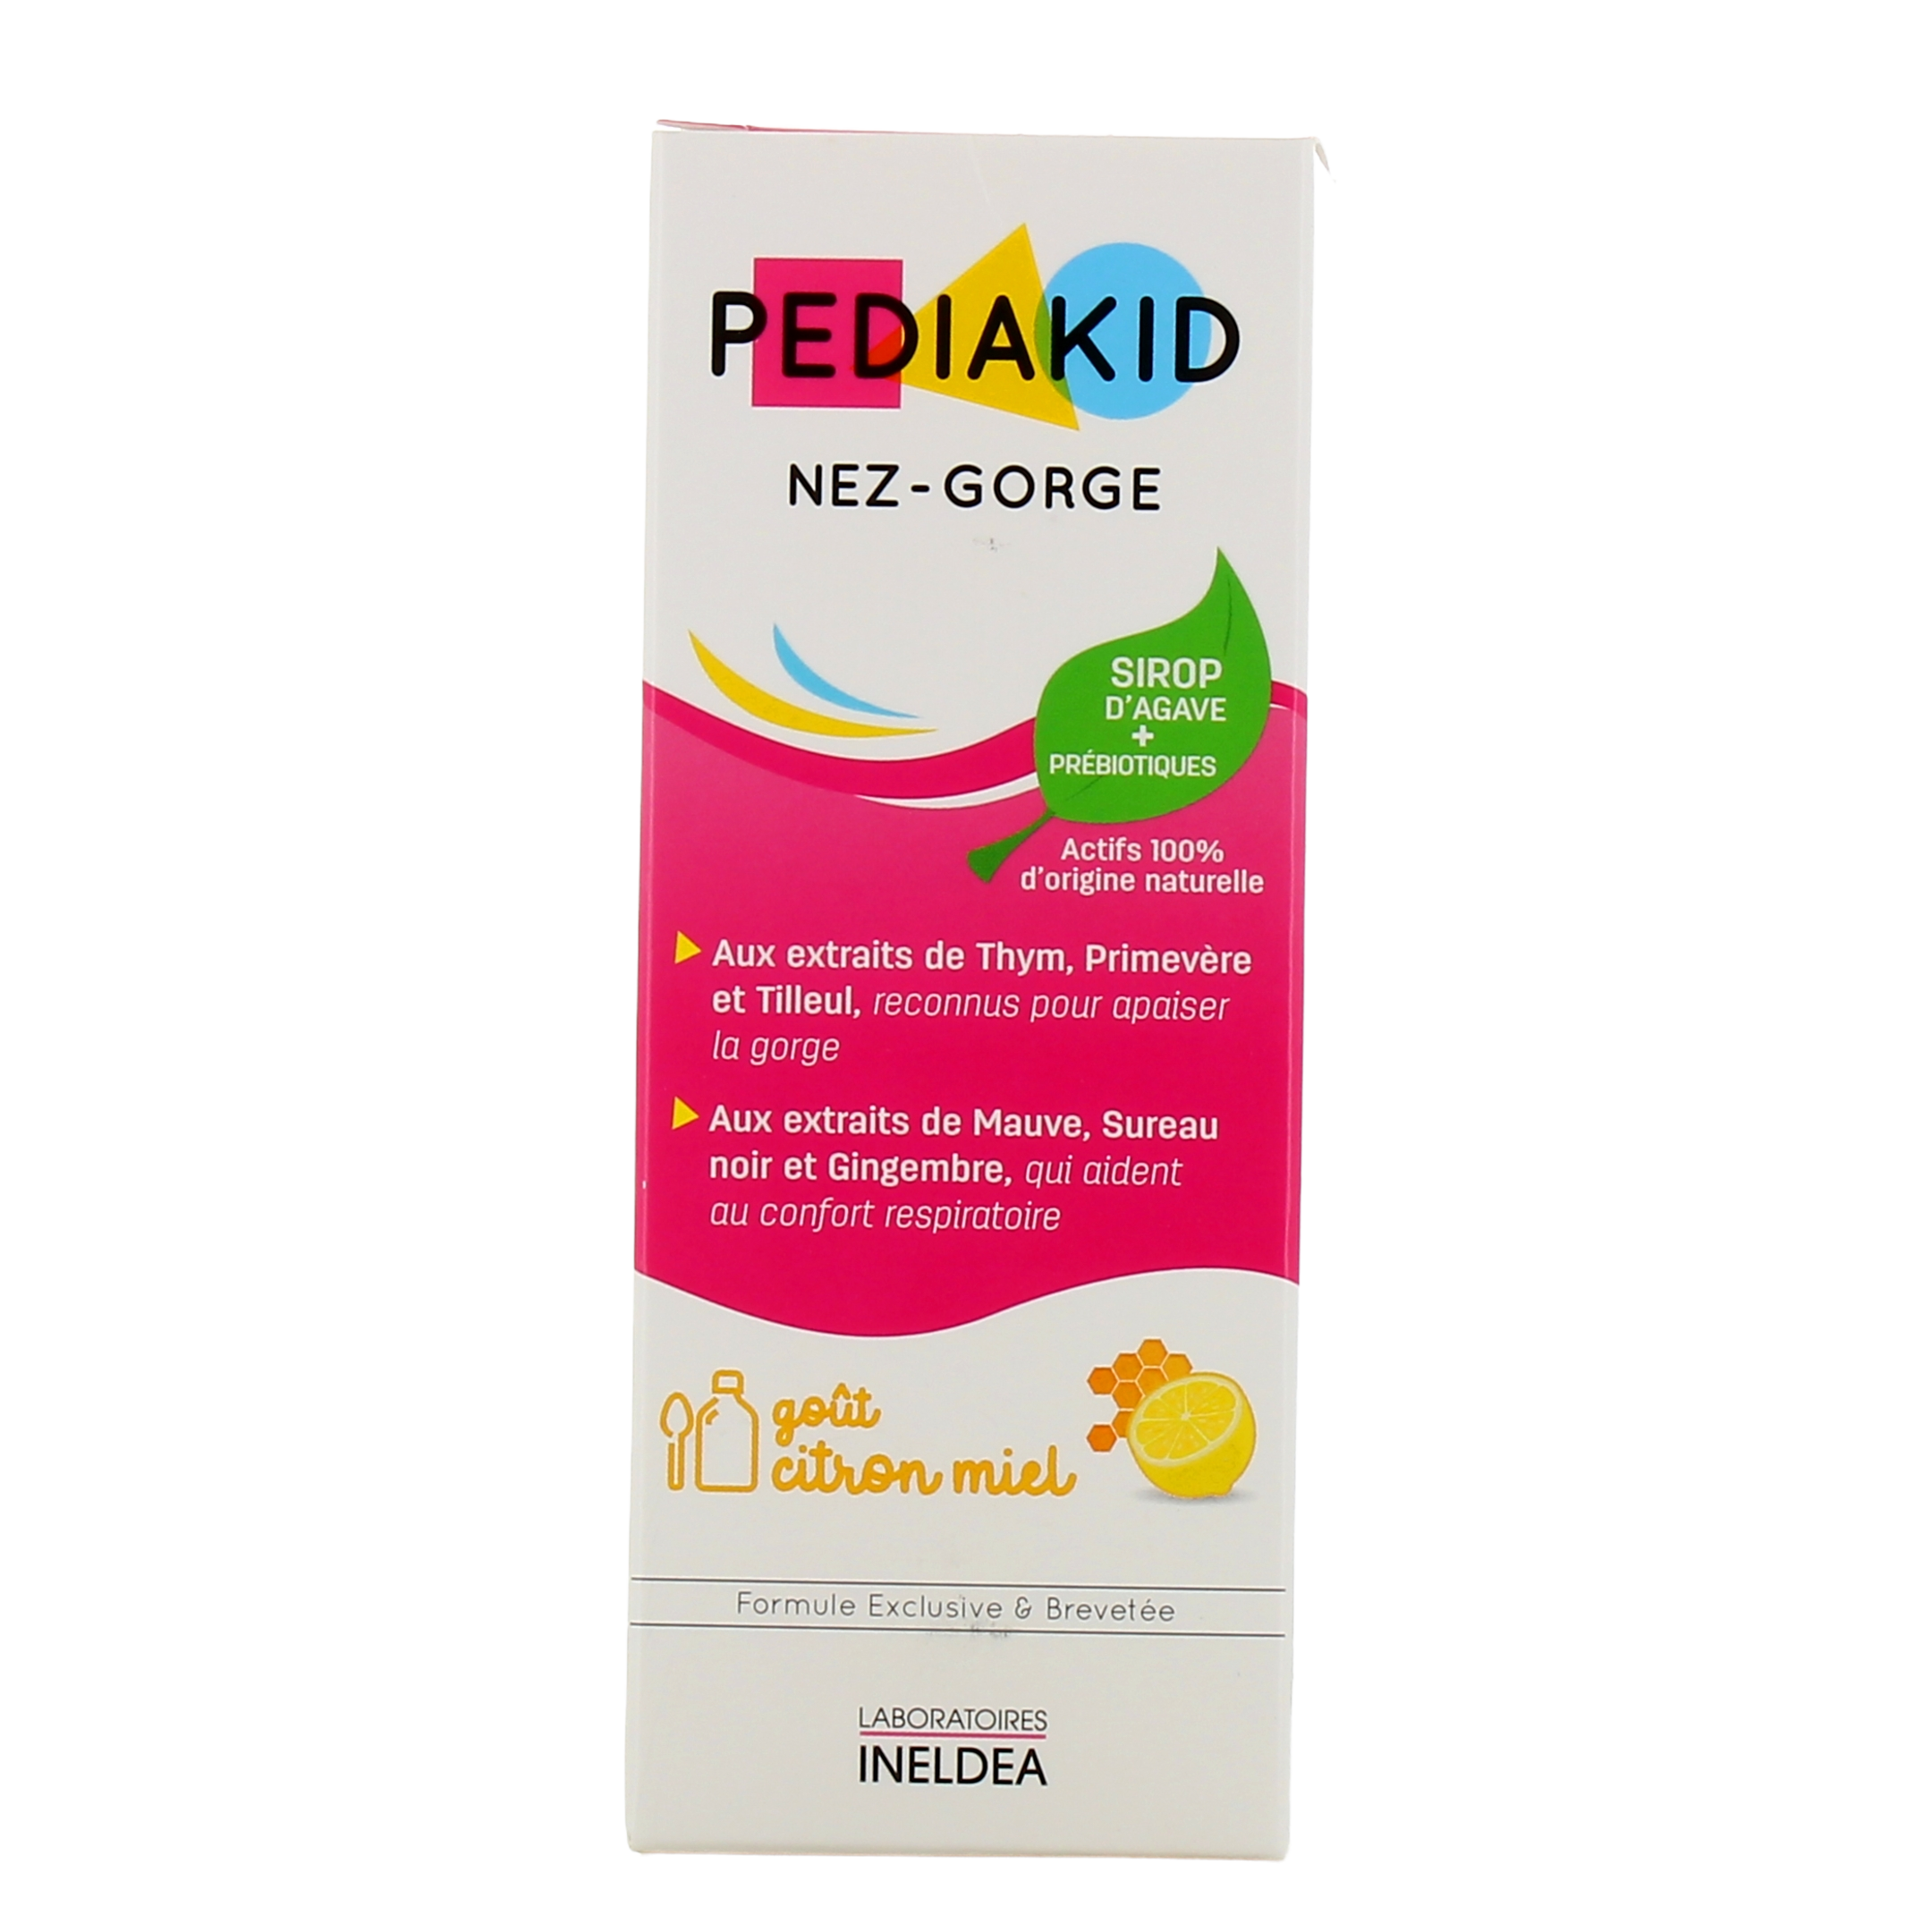 Pediakid nez-gorge goût miel citron - confort respiratoire bébé